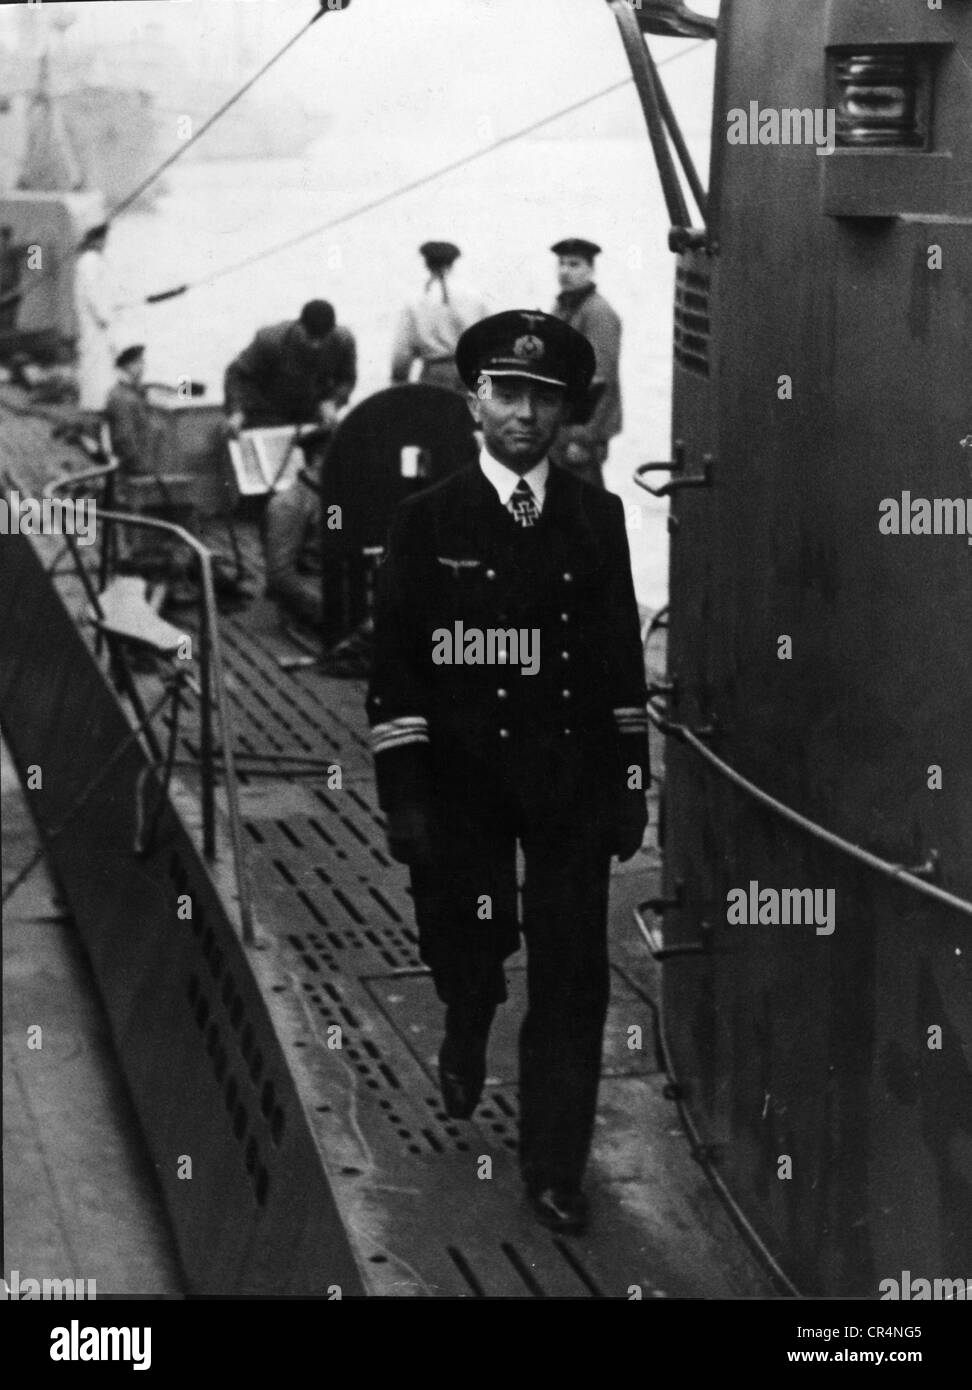 Prien, Guenther, 16.1.1908 - 7.3.1941, ufficiale navale tedesco, comandante del sottomarino U-47, sul ponte del suo sottomarino, circa 1940, Foto Stock